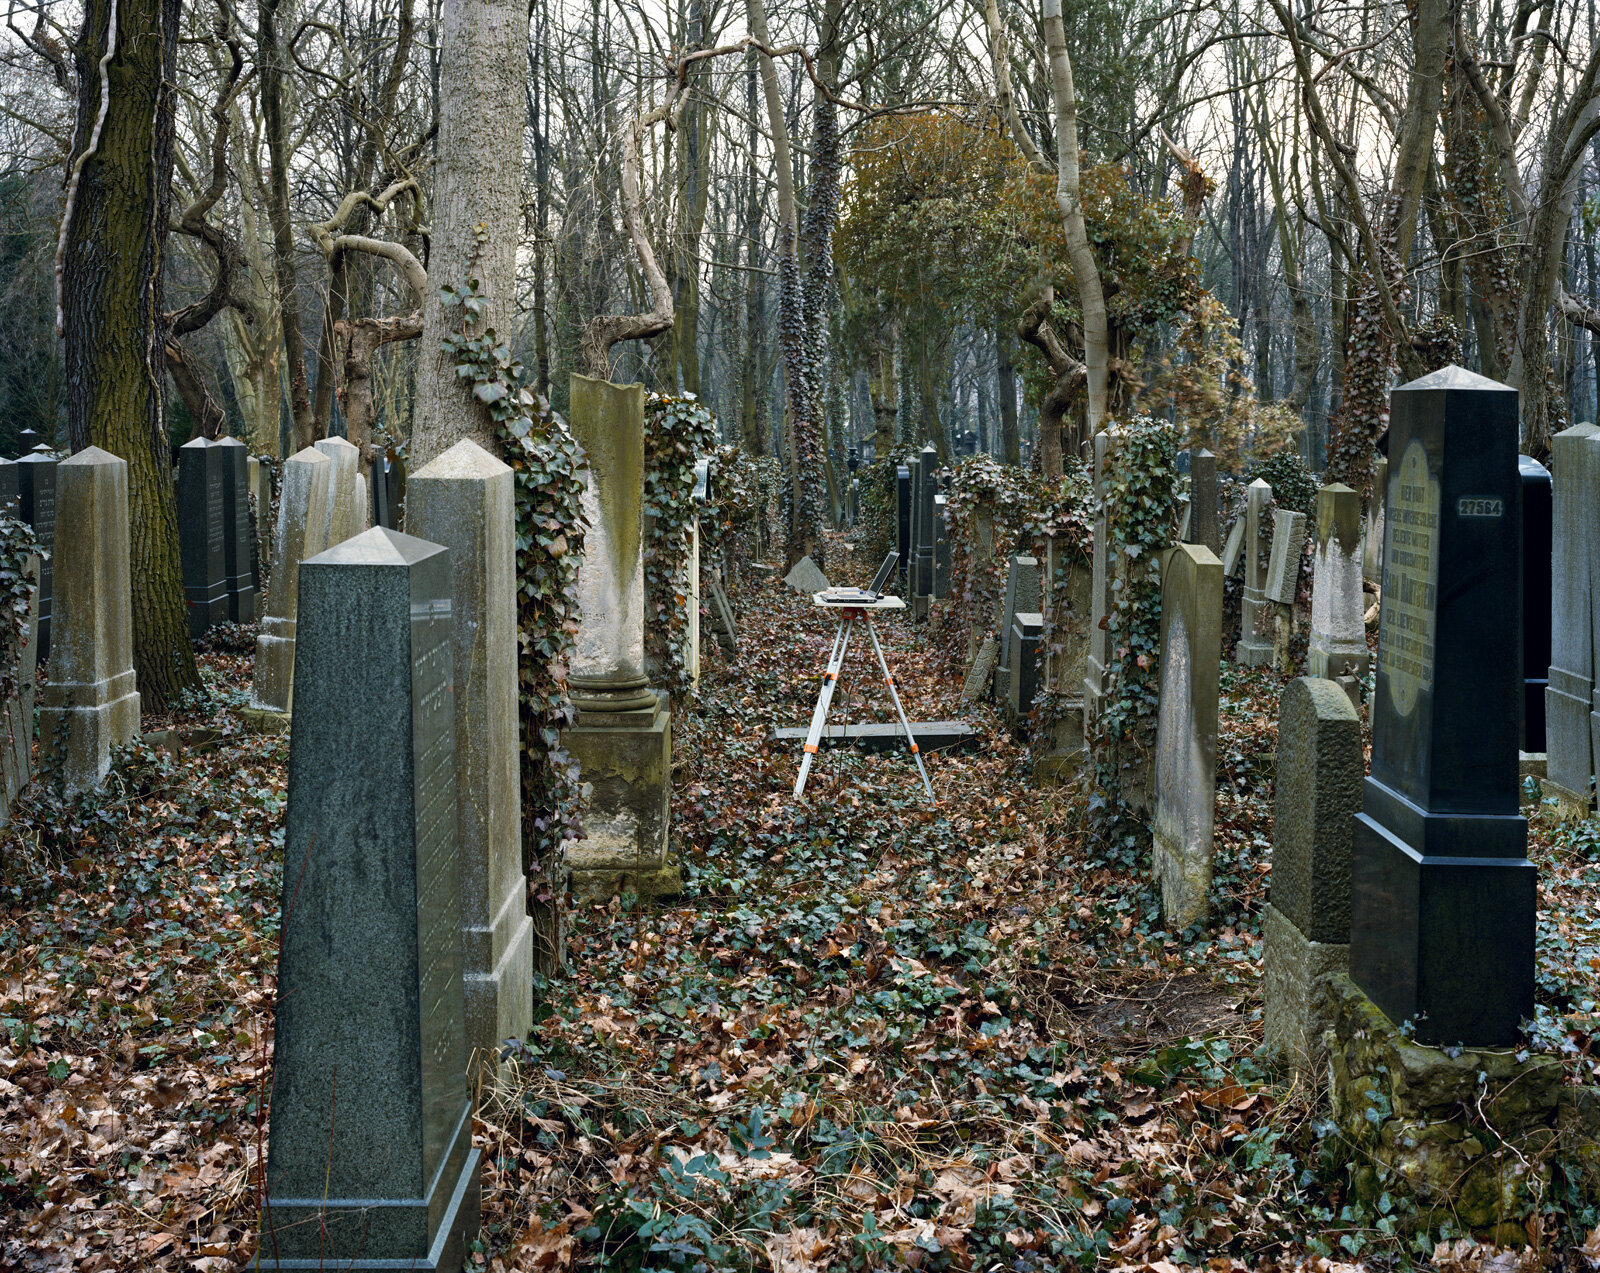  Jewish Cemetery, Weissensee, Berlin 2008 